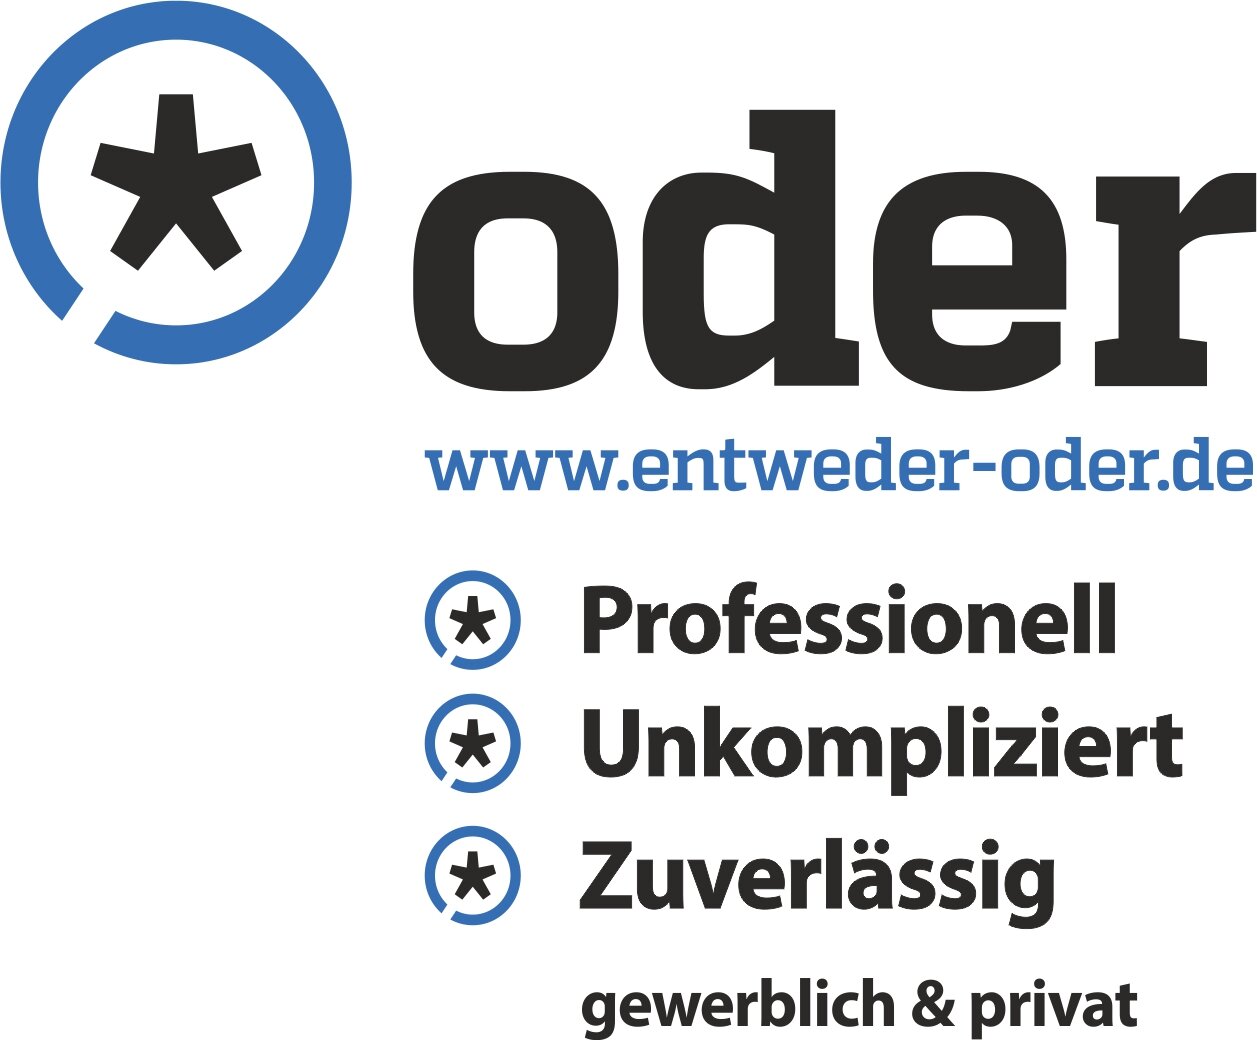 www.entweder-oder.de